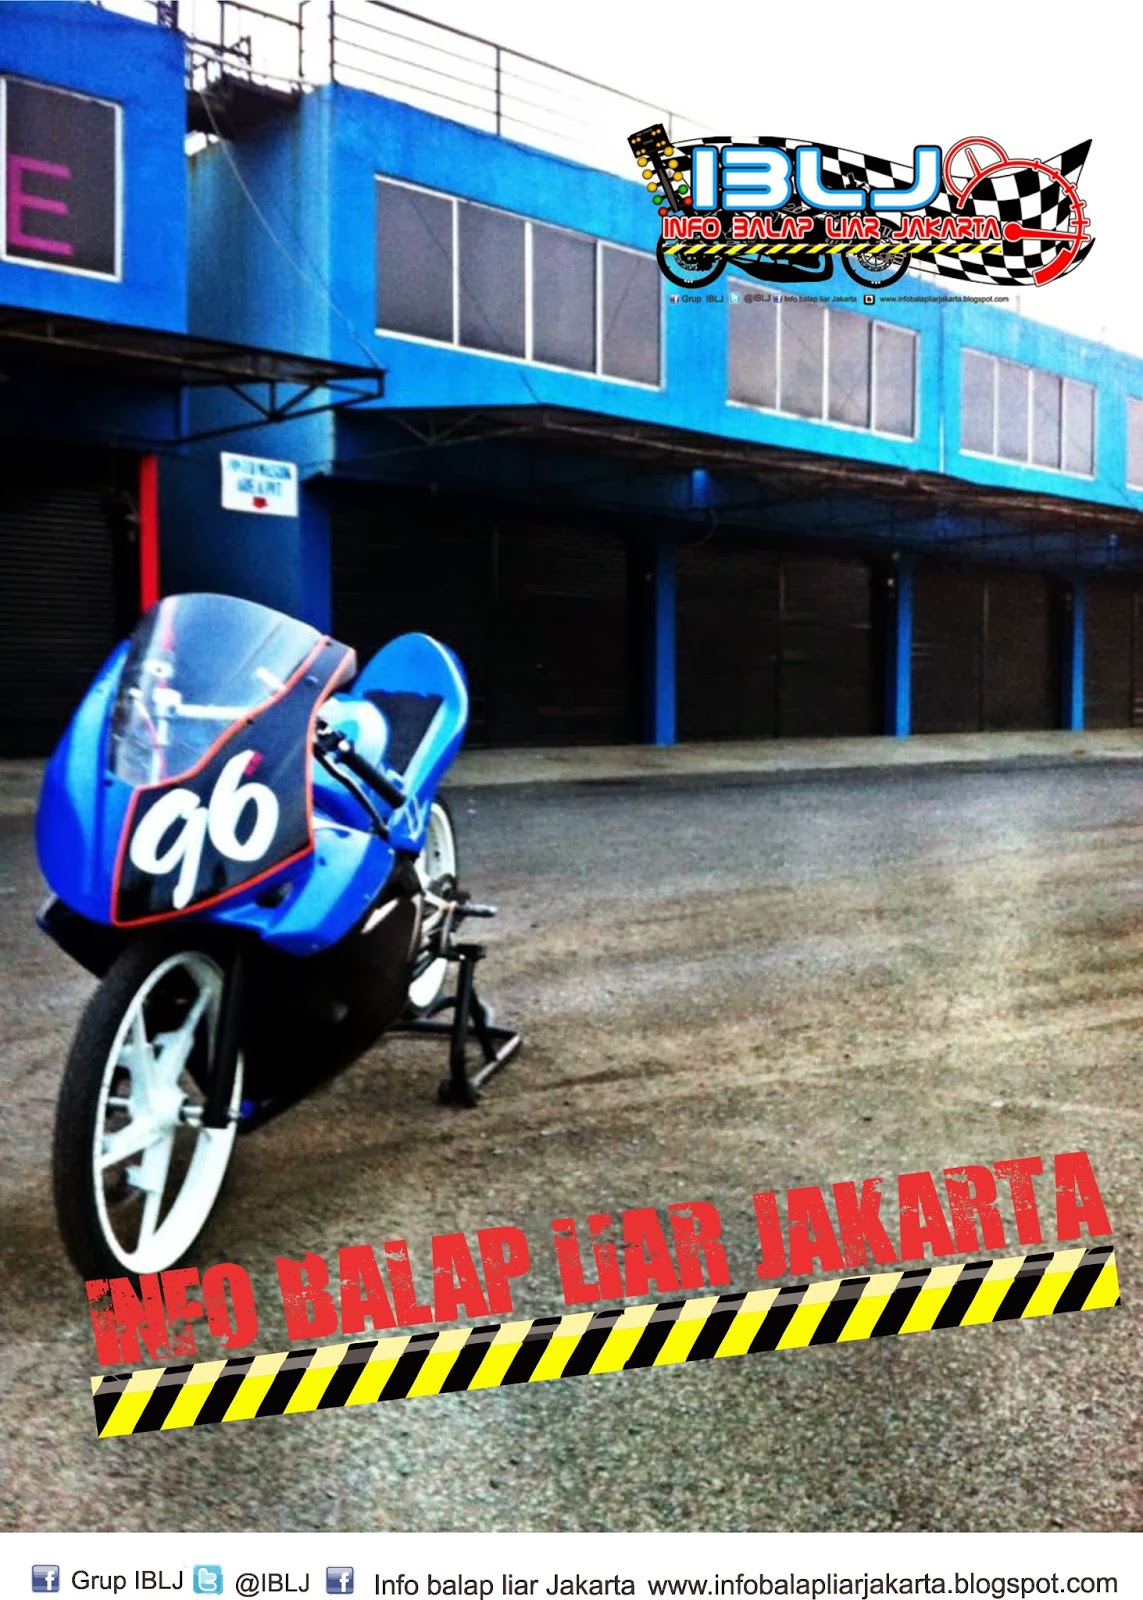 99 Gambar Motor Drag Dan Road Race Terupdate Kewak Motor